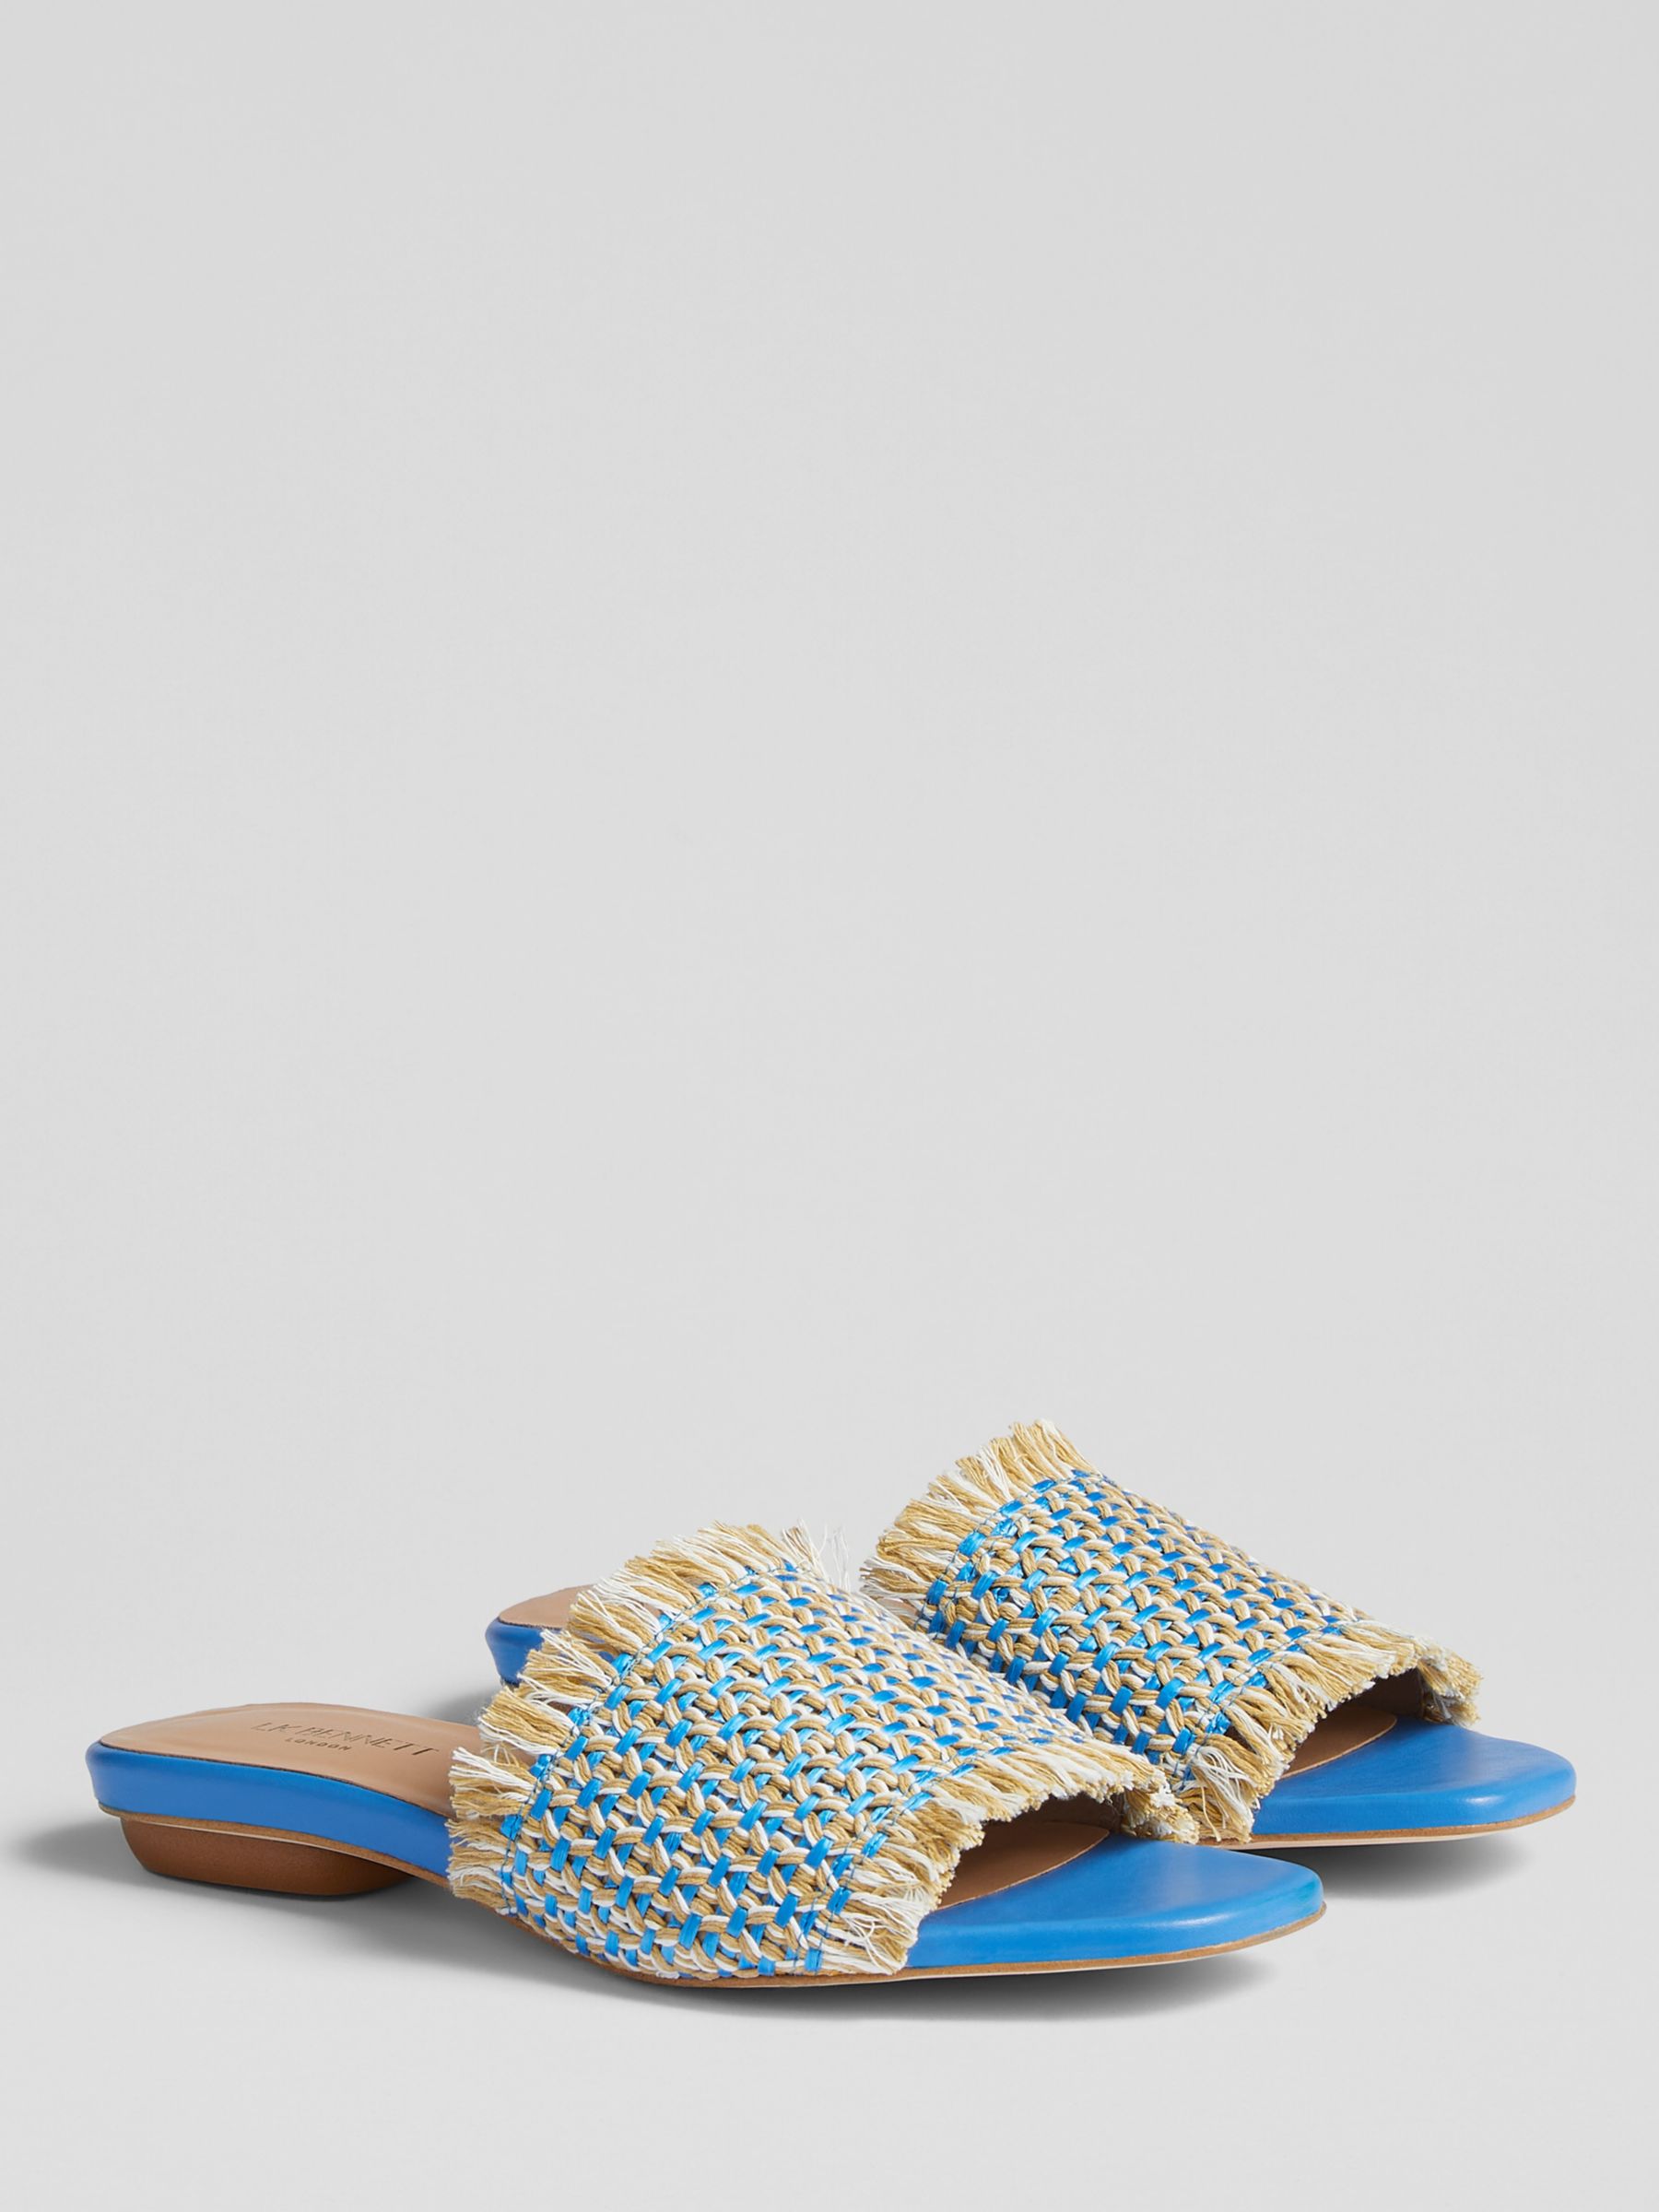 L.K.Bennett Meera Raffia Flat Sandals, Blue/Cream, 2